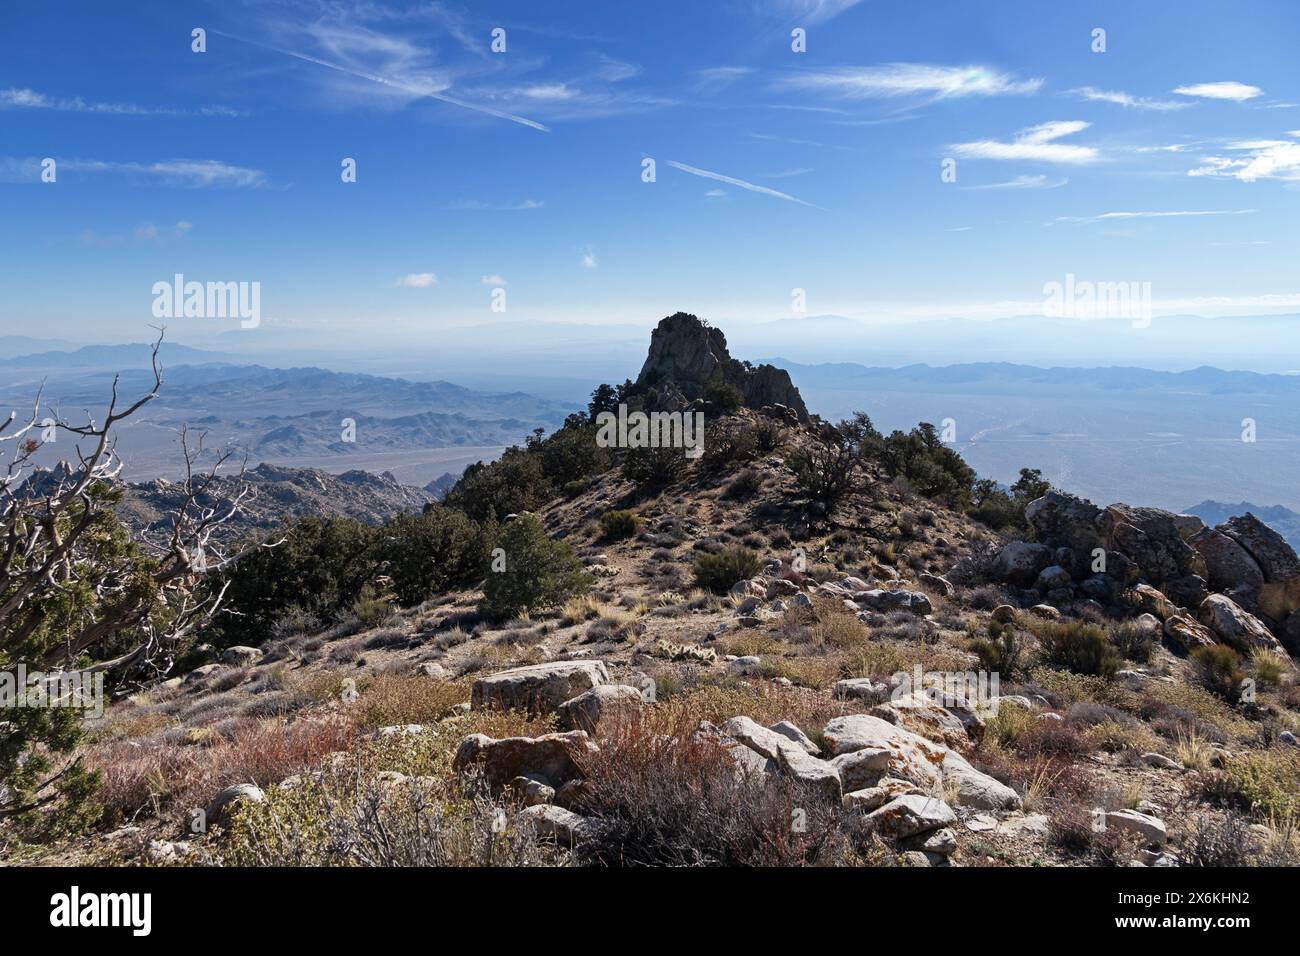 Image de Granite Pinnacle prise depuis le sommet de Granite Mountain dans le désert californien Banque D'Images